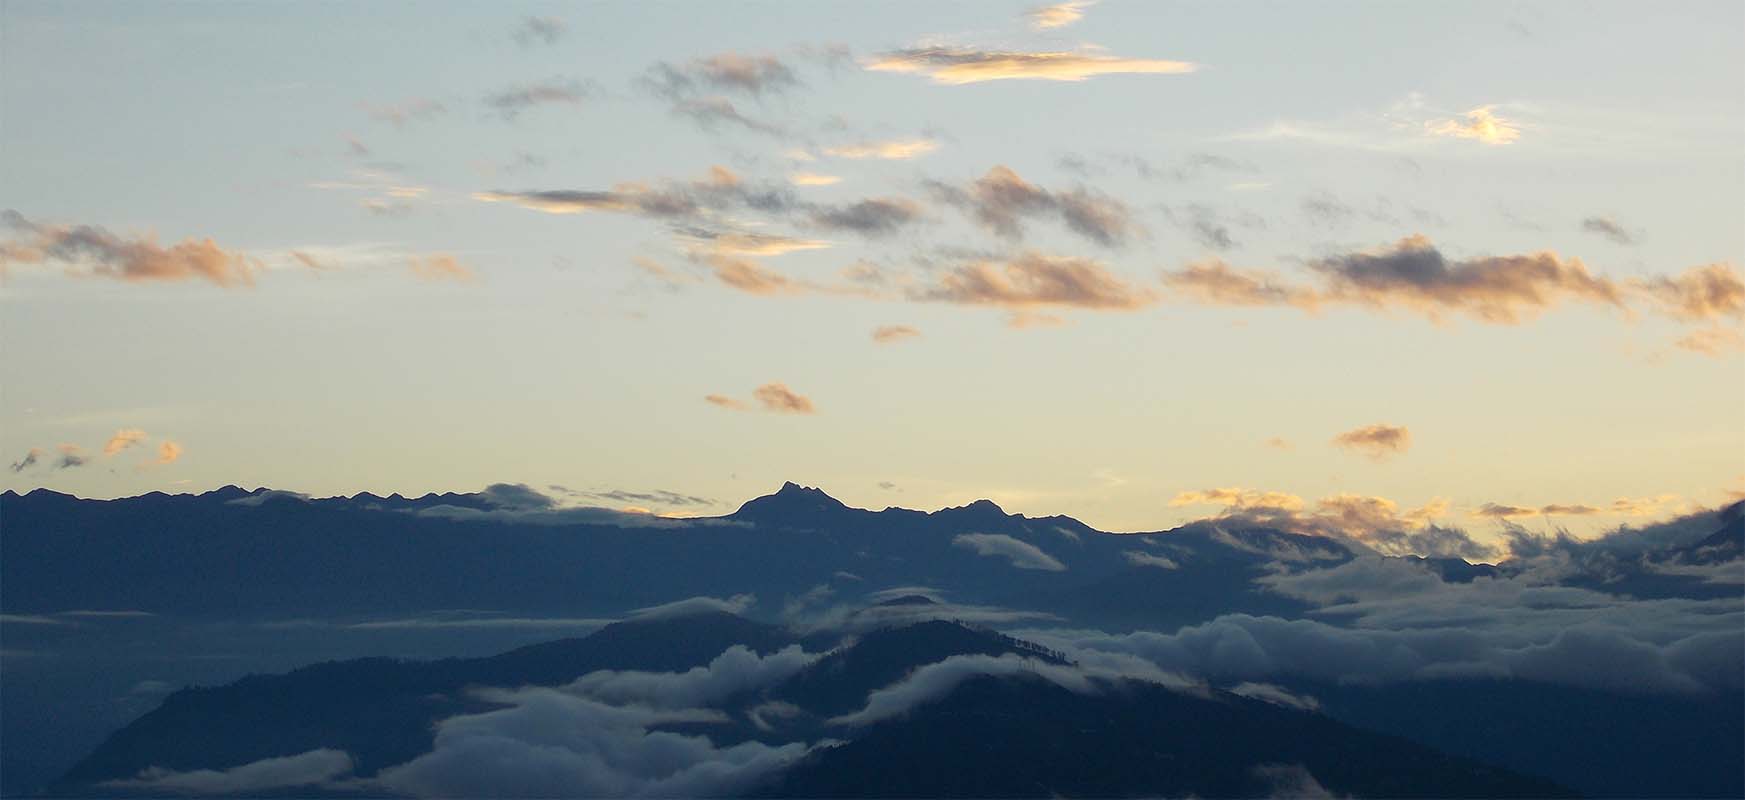 view of kanchenjunga from tinchulay rai resort